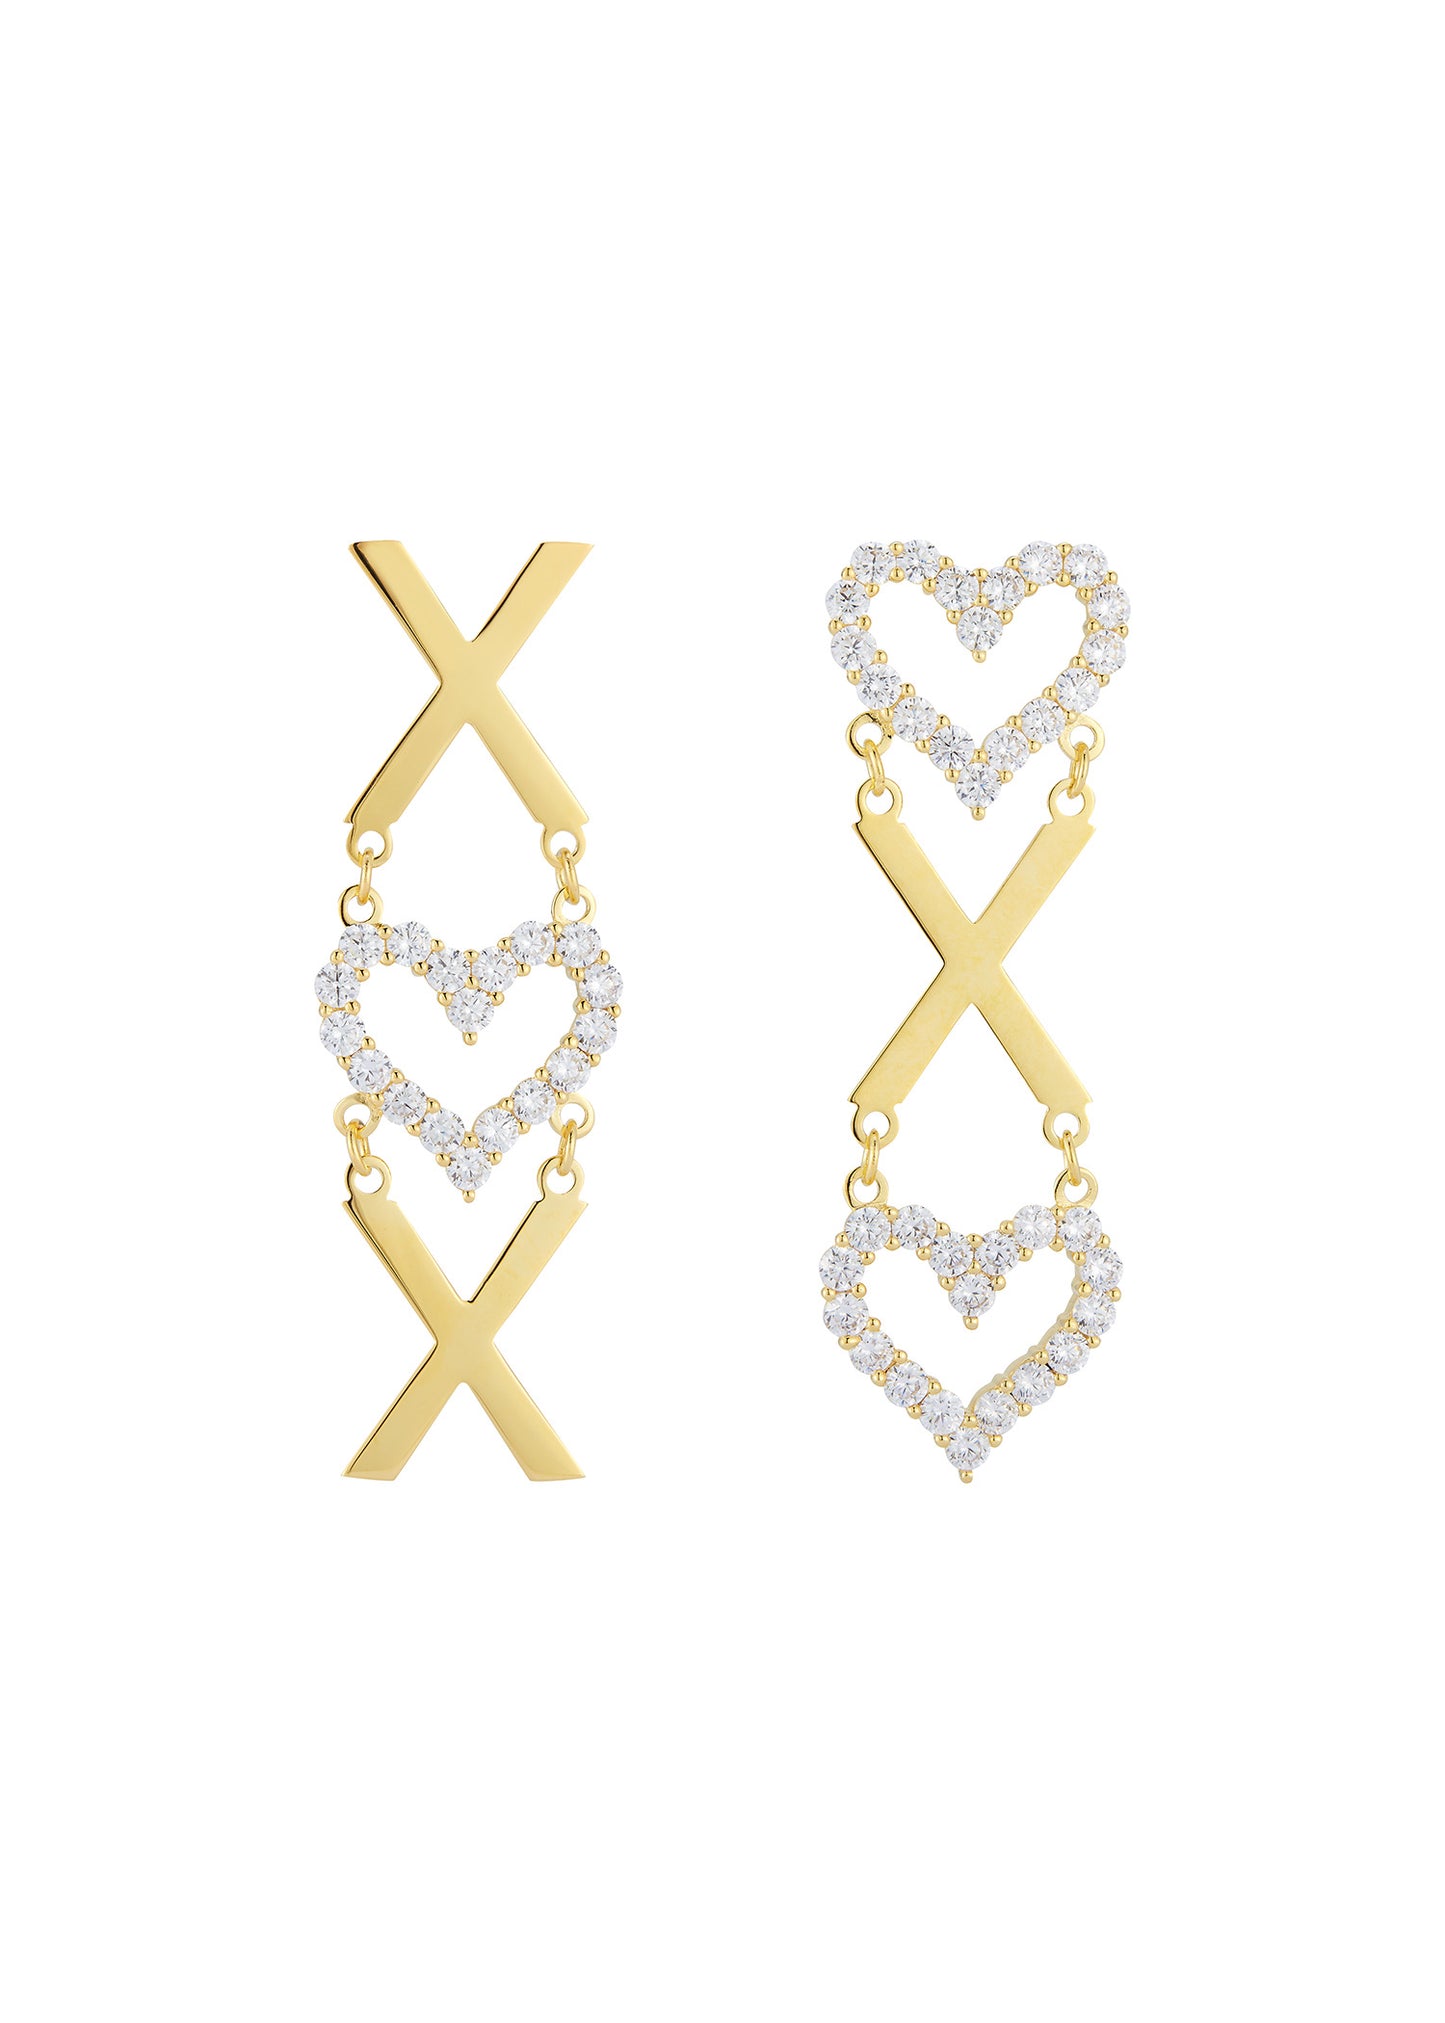 XOX OXO Earrings